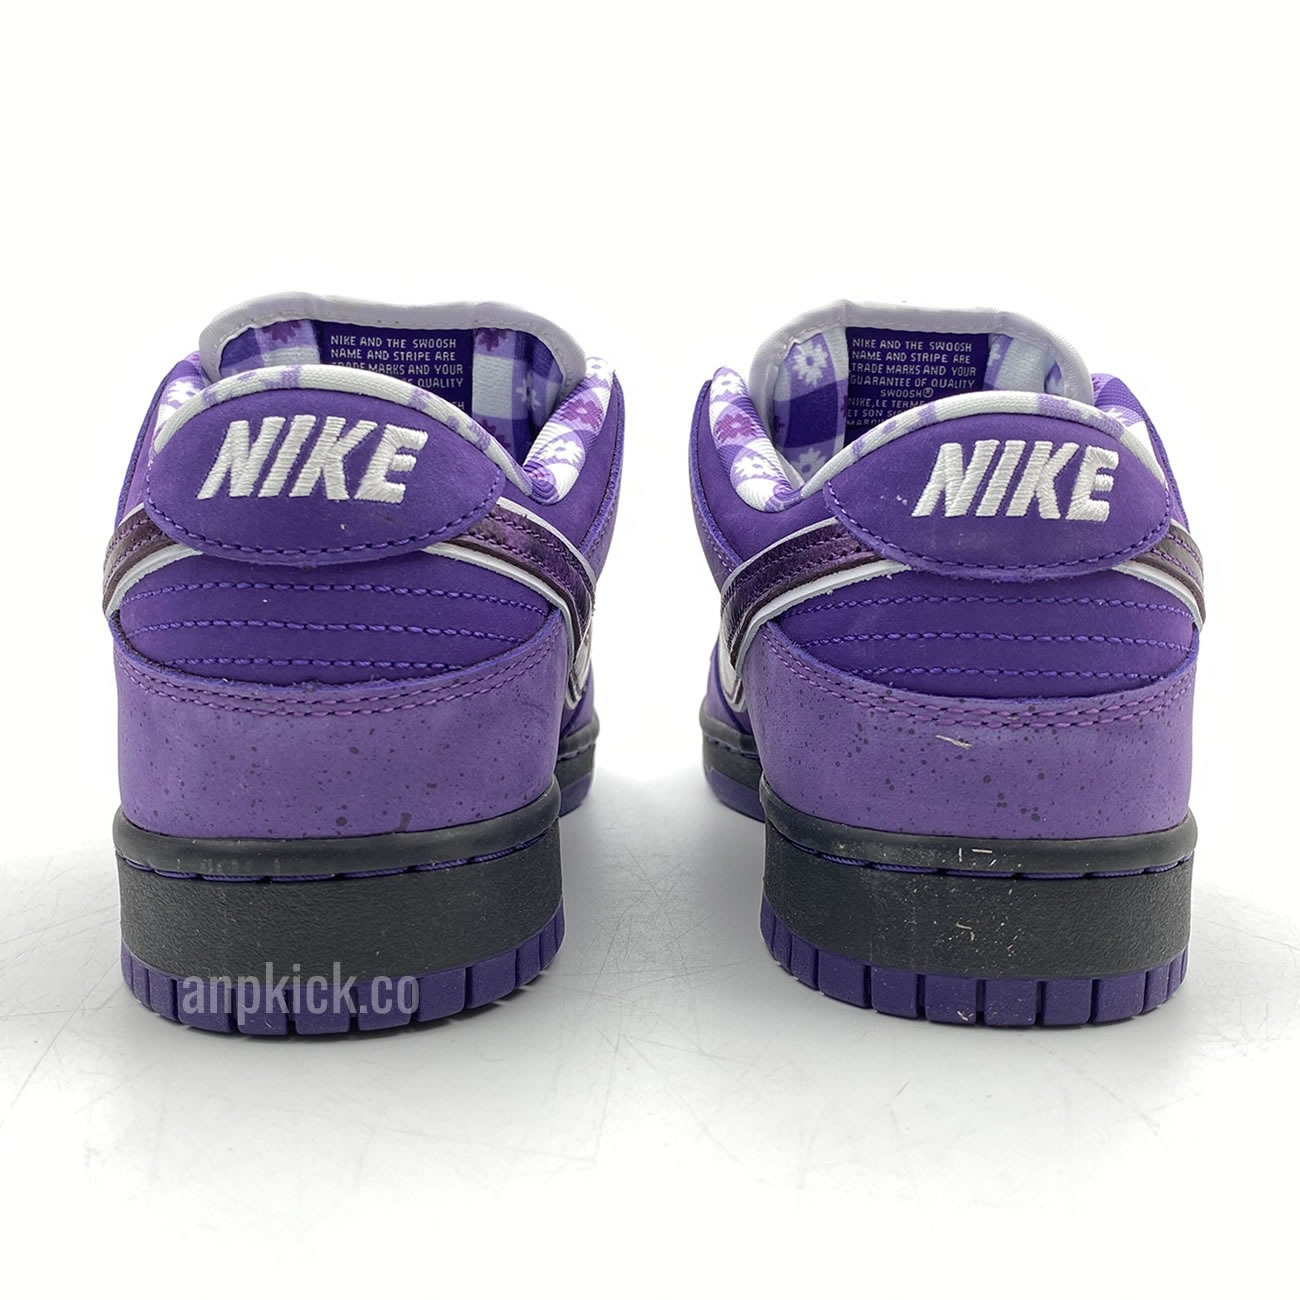 Anpkick Nike Sb Dunk Low Concepts Purple Lobster Bv1310 55570 (5) - newkick.org